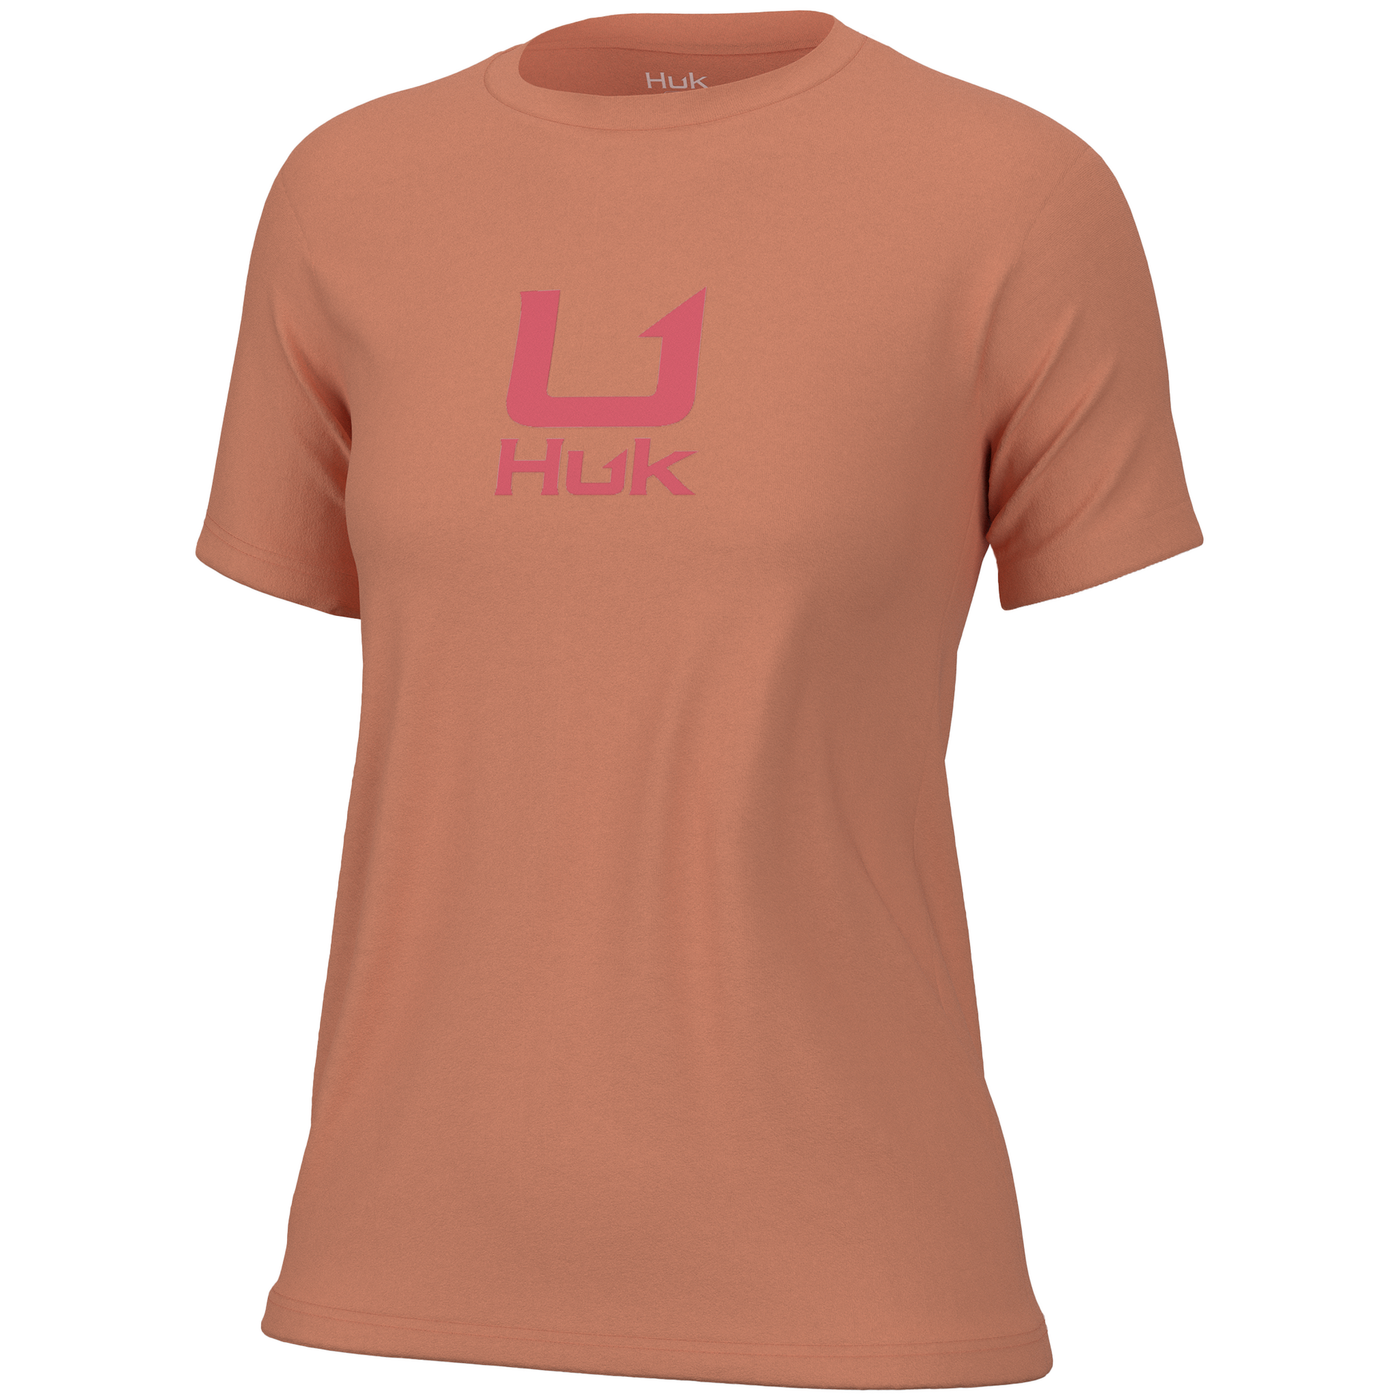 Huk Womens Logo Tee